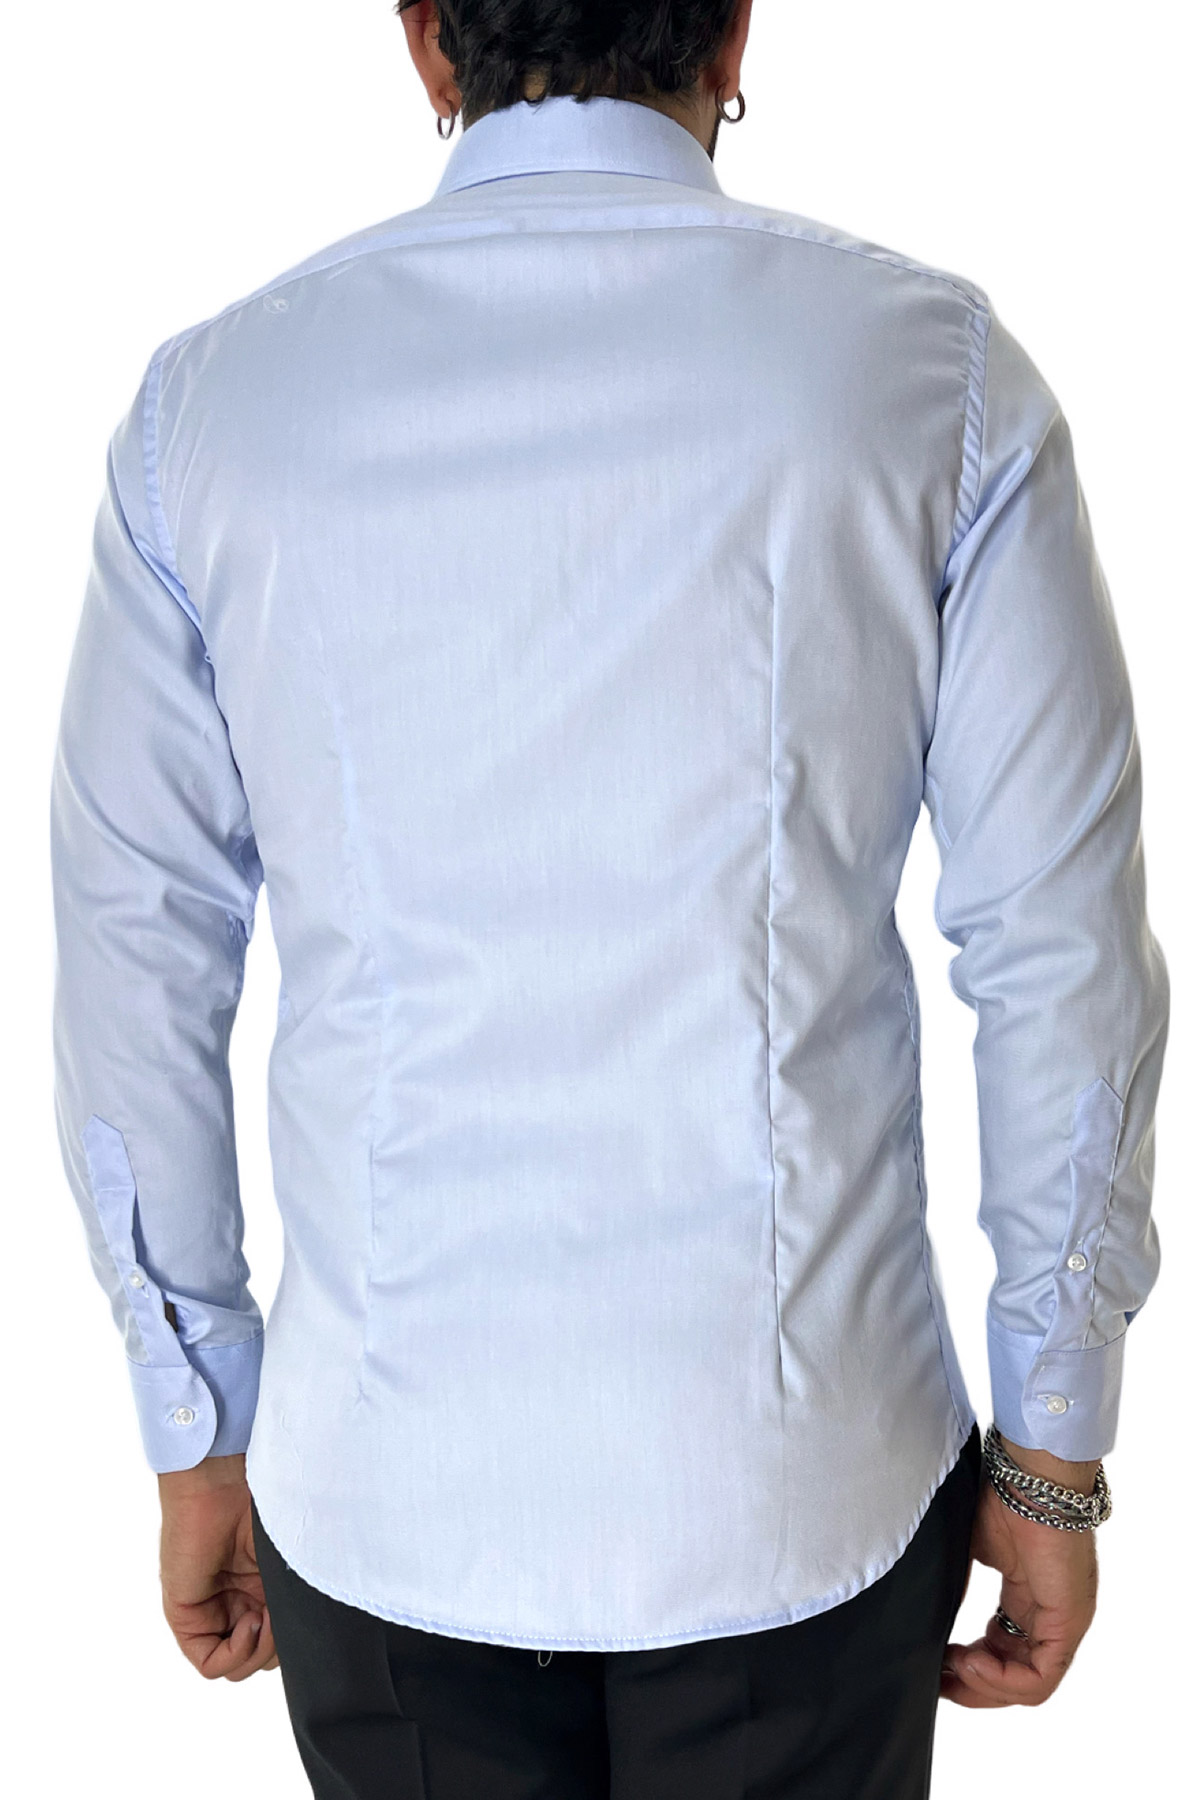 Camicia Uomo Slim fit 100% cotone morbido effetto microriga tono su tono Collo semi francese tinta unita